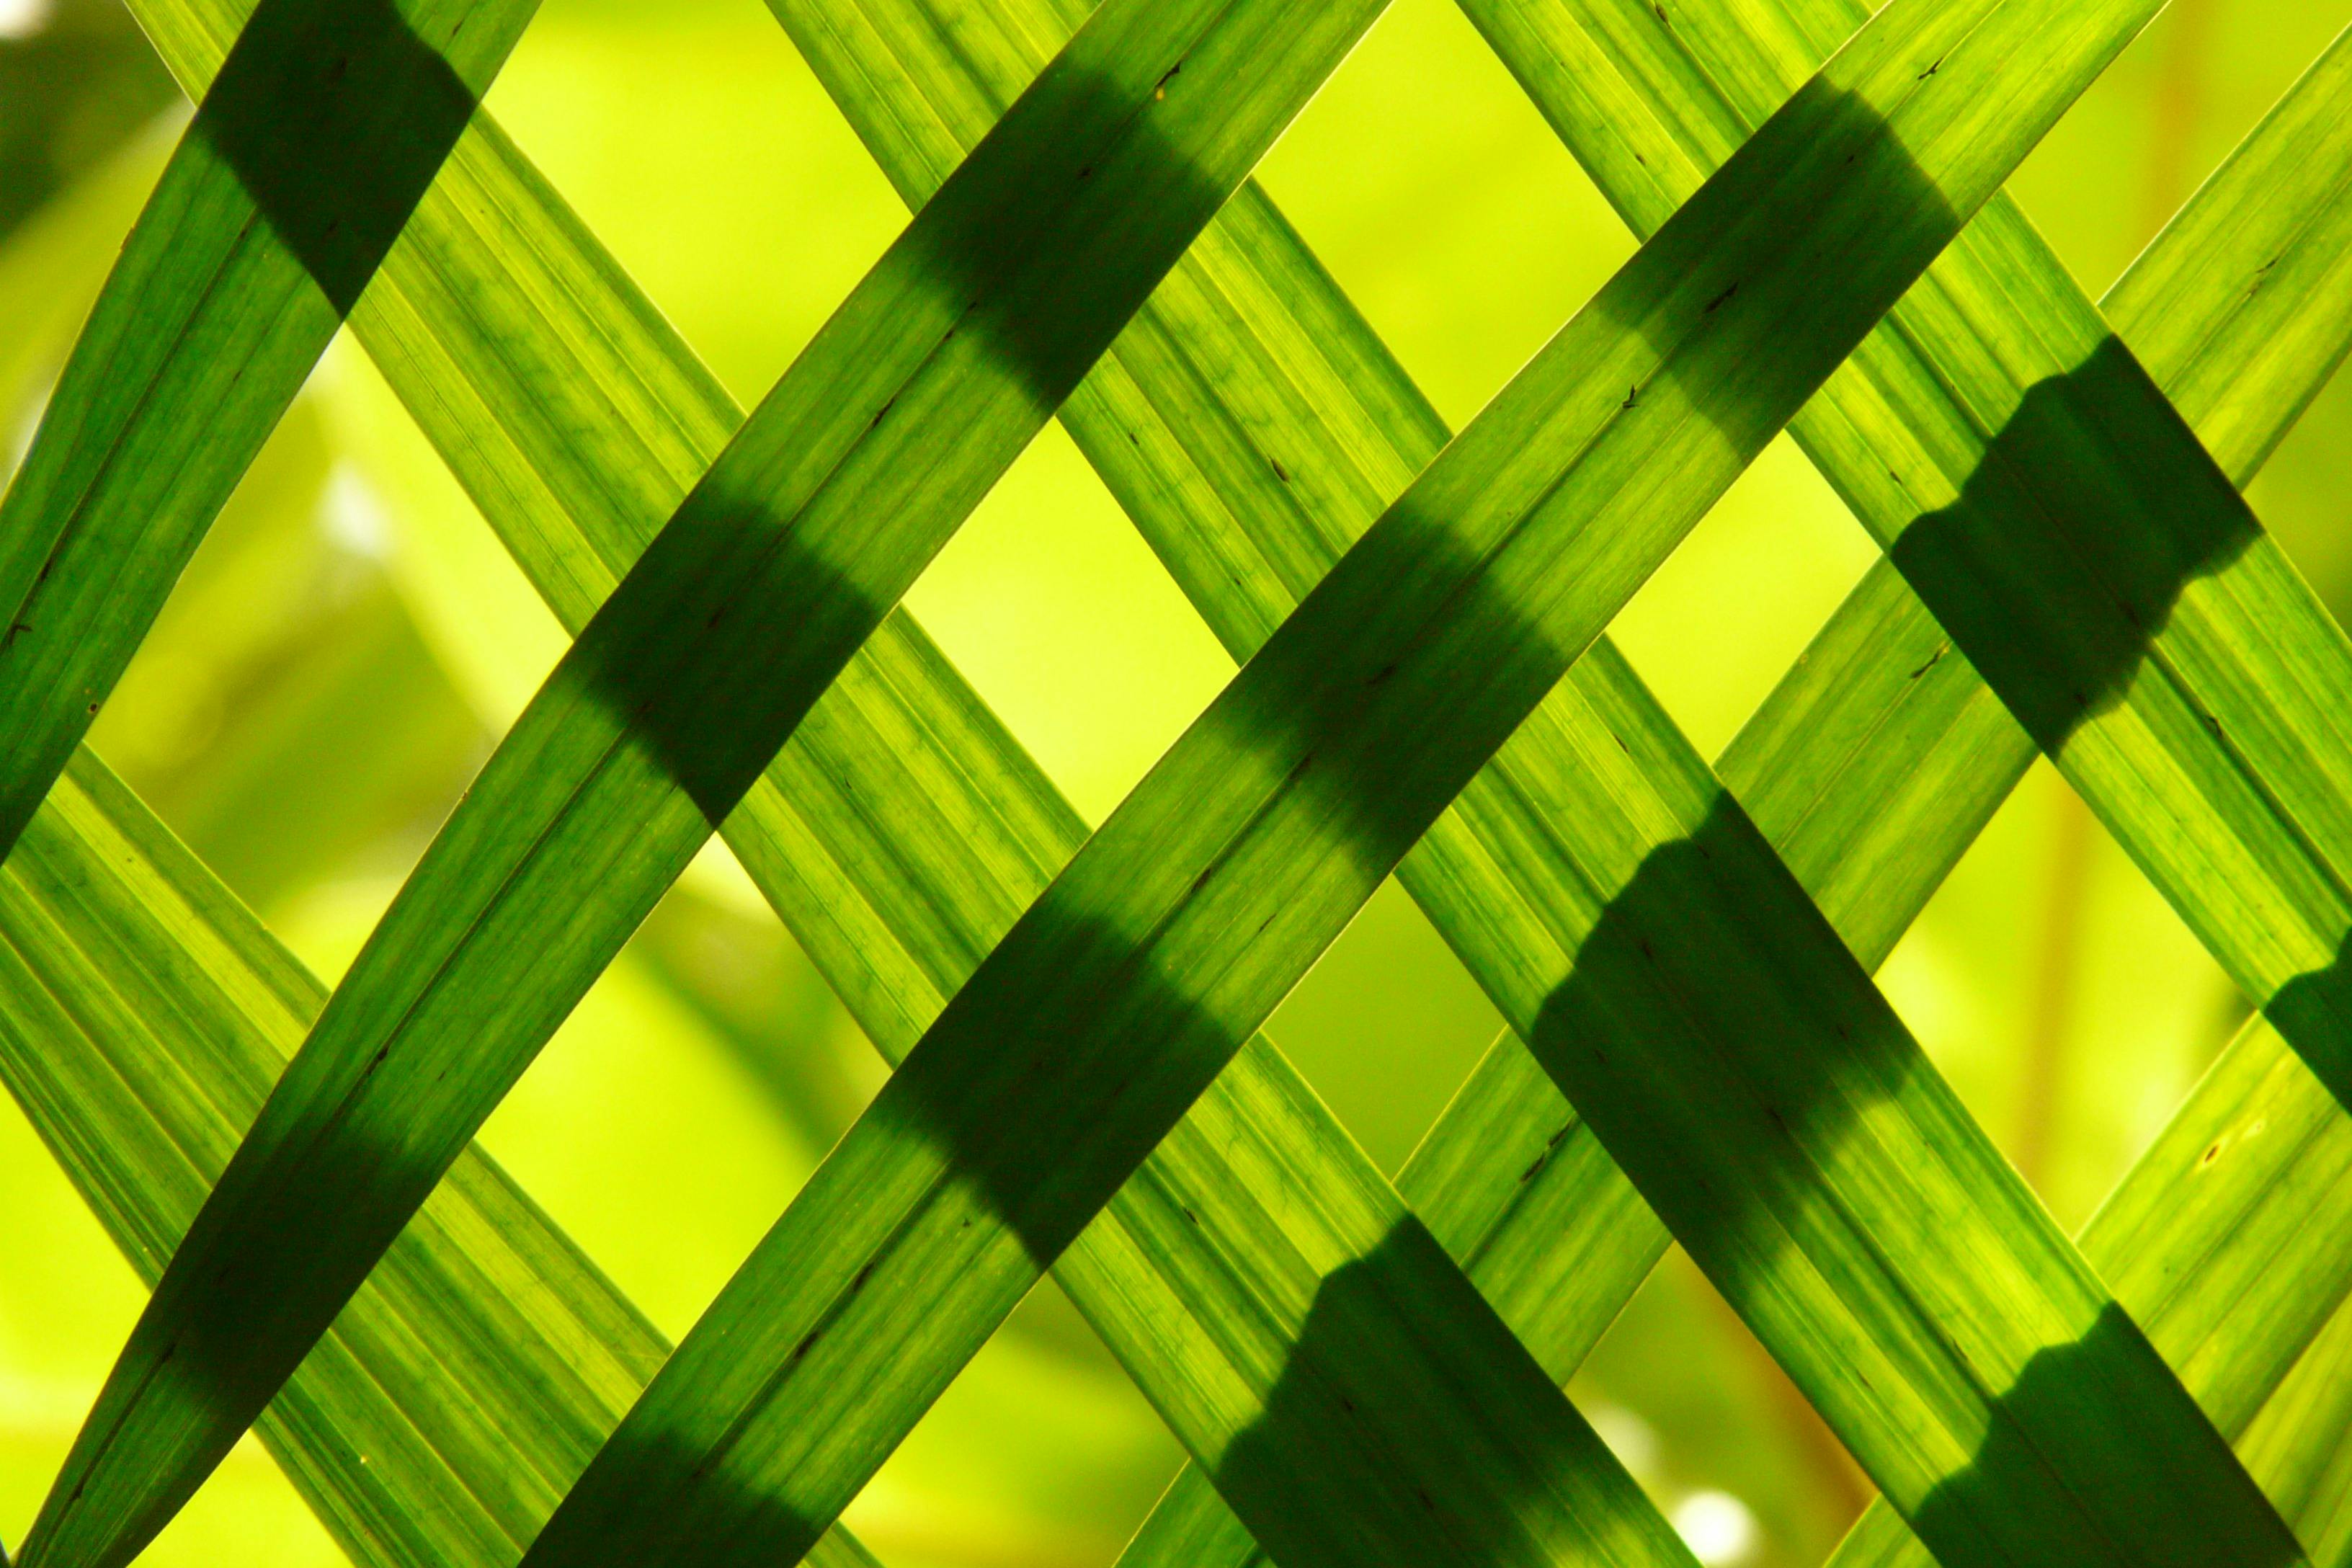 100 Engaging Bamboo Photos  Pexels  Free Stock Photos